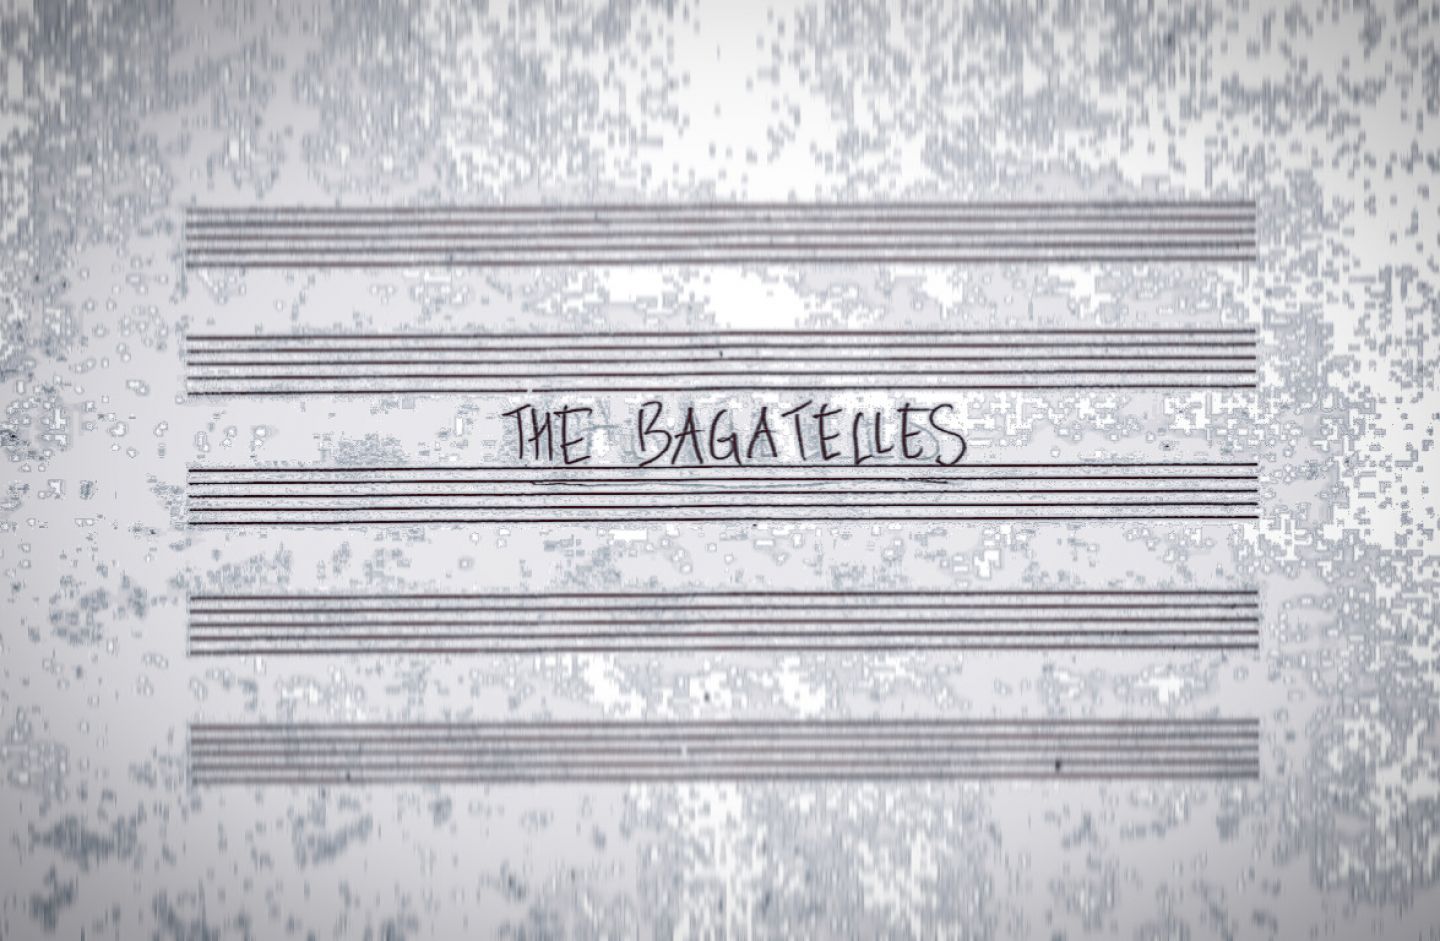 John Zorn's The Bagatelles